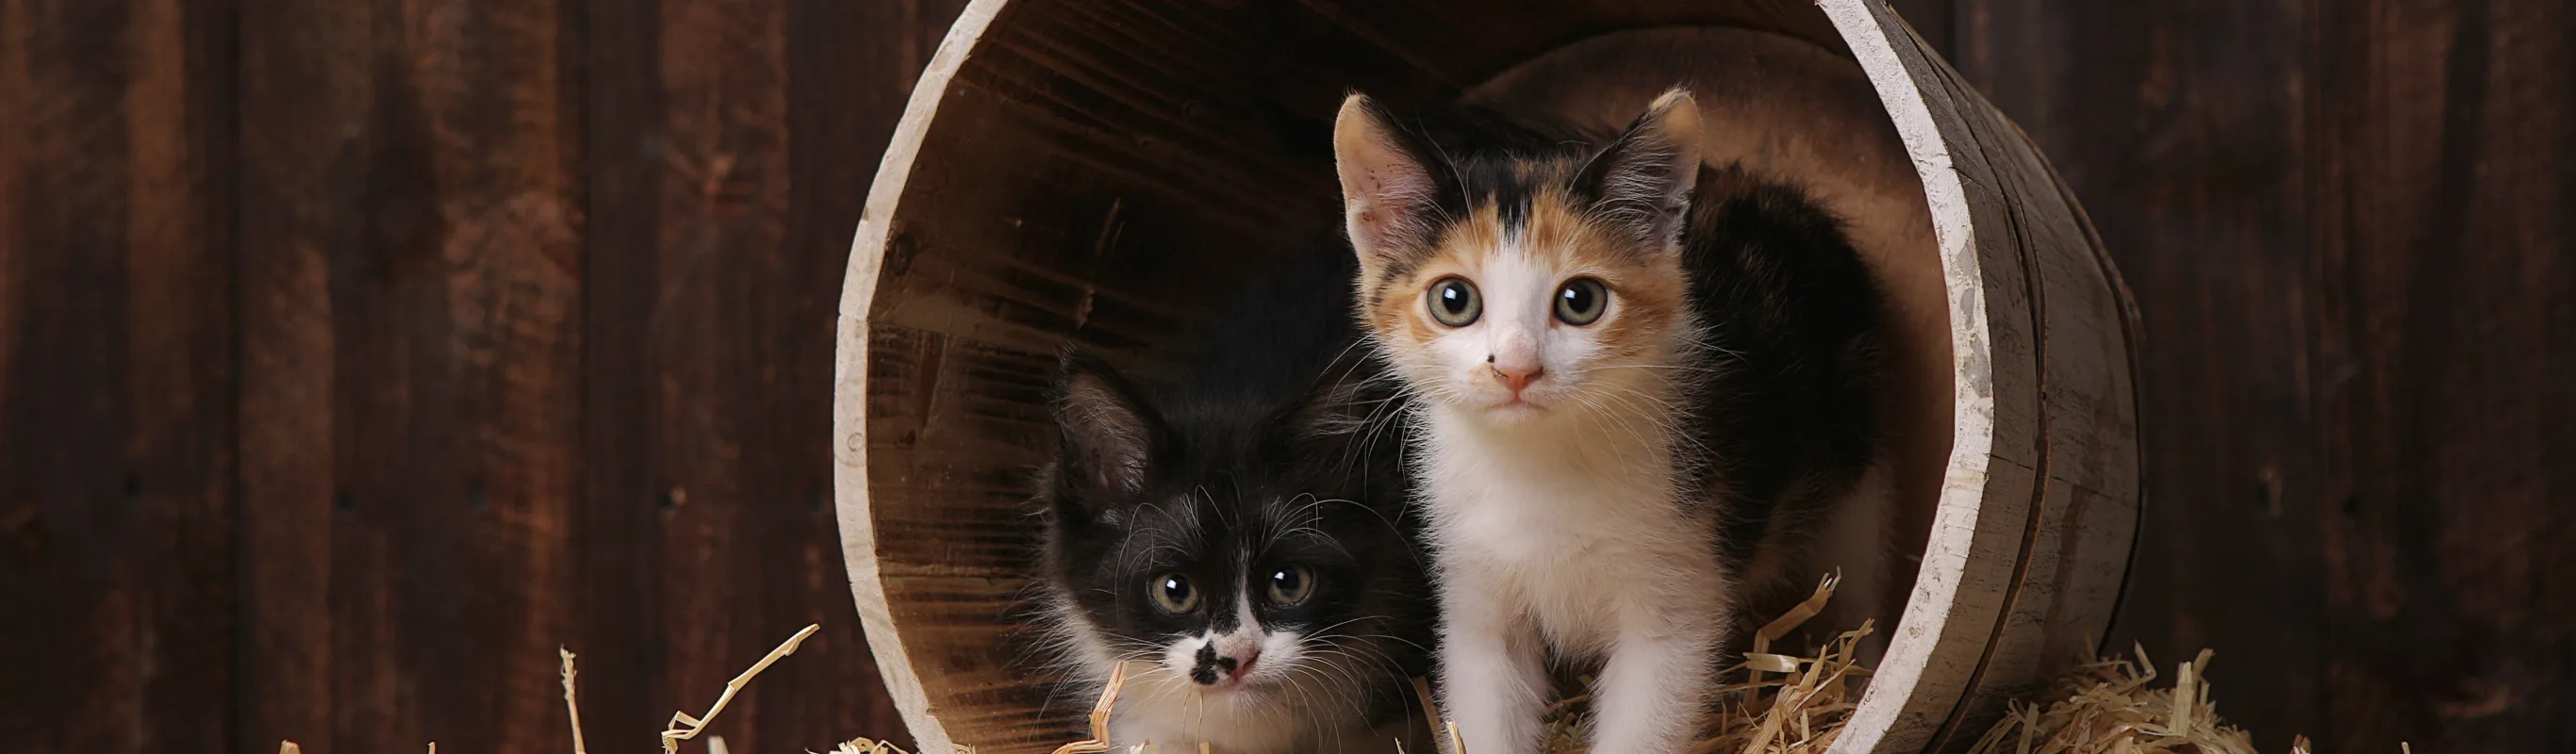 kittens in a barrel